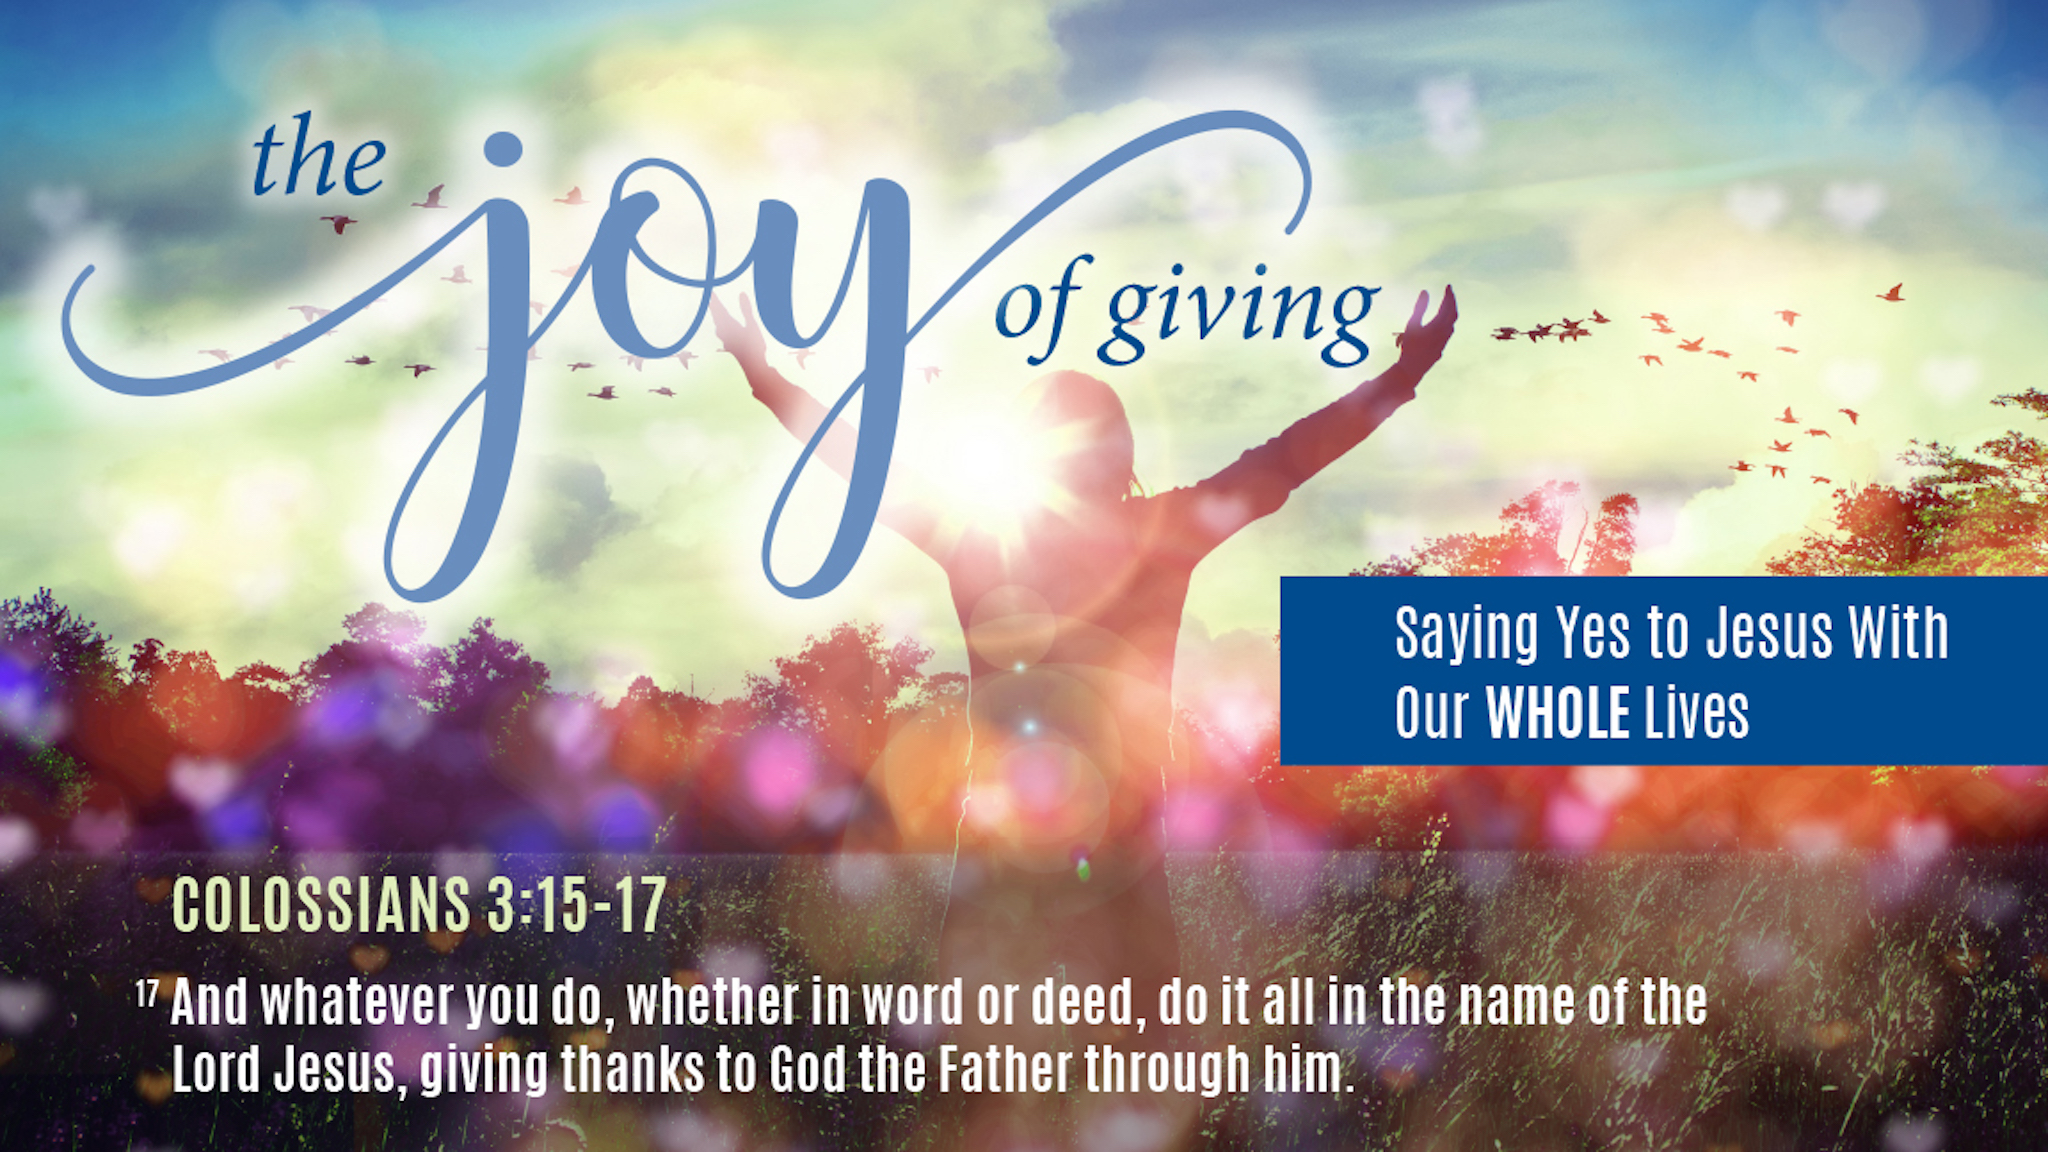 joy-of-giving